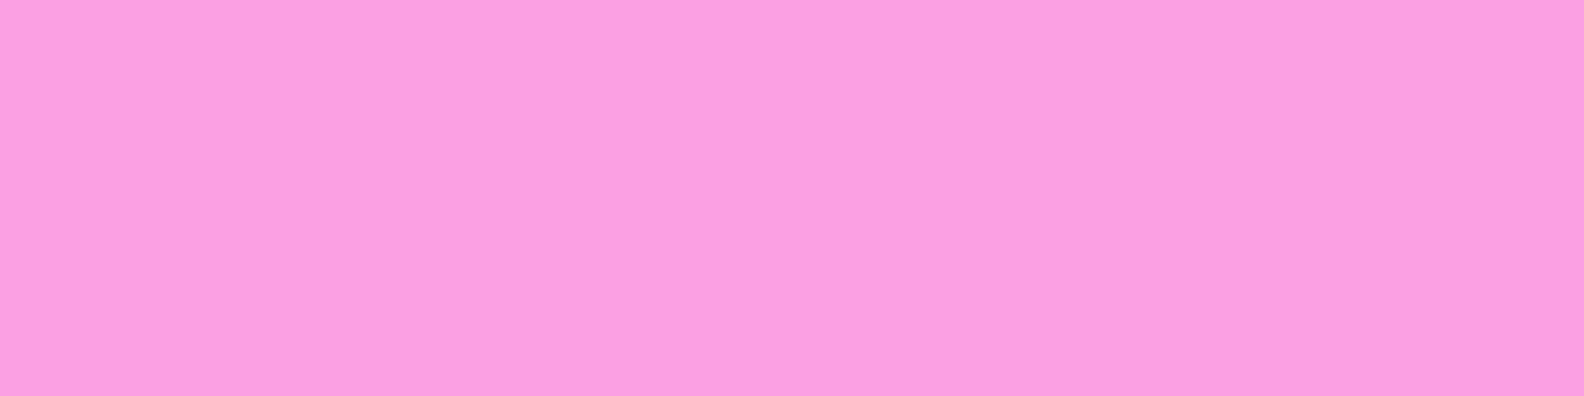 1584x396 Lavender Rose Solid Color Background